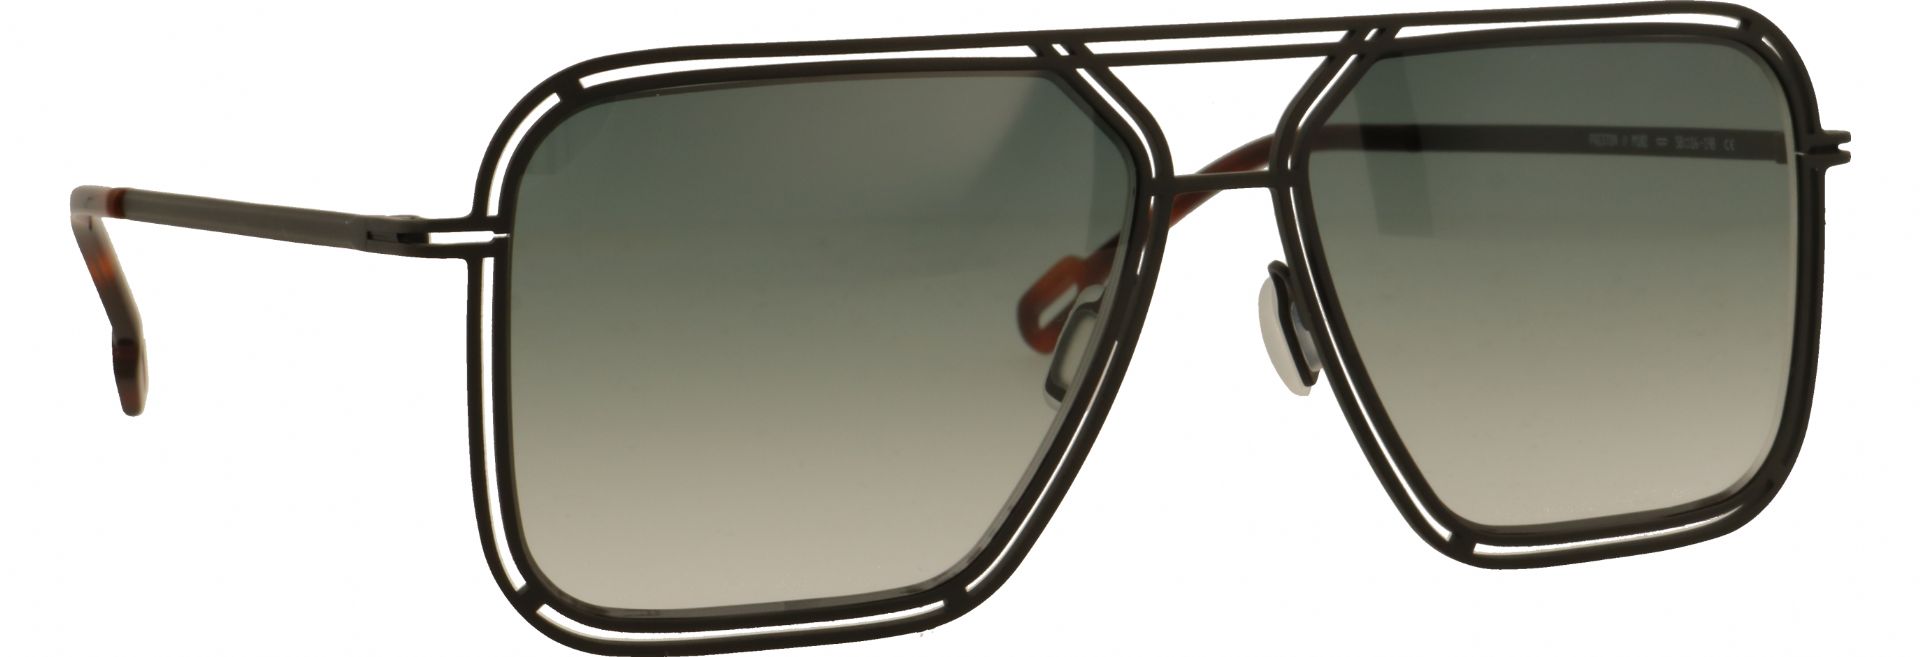 Odette lunettes Preston M102